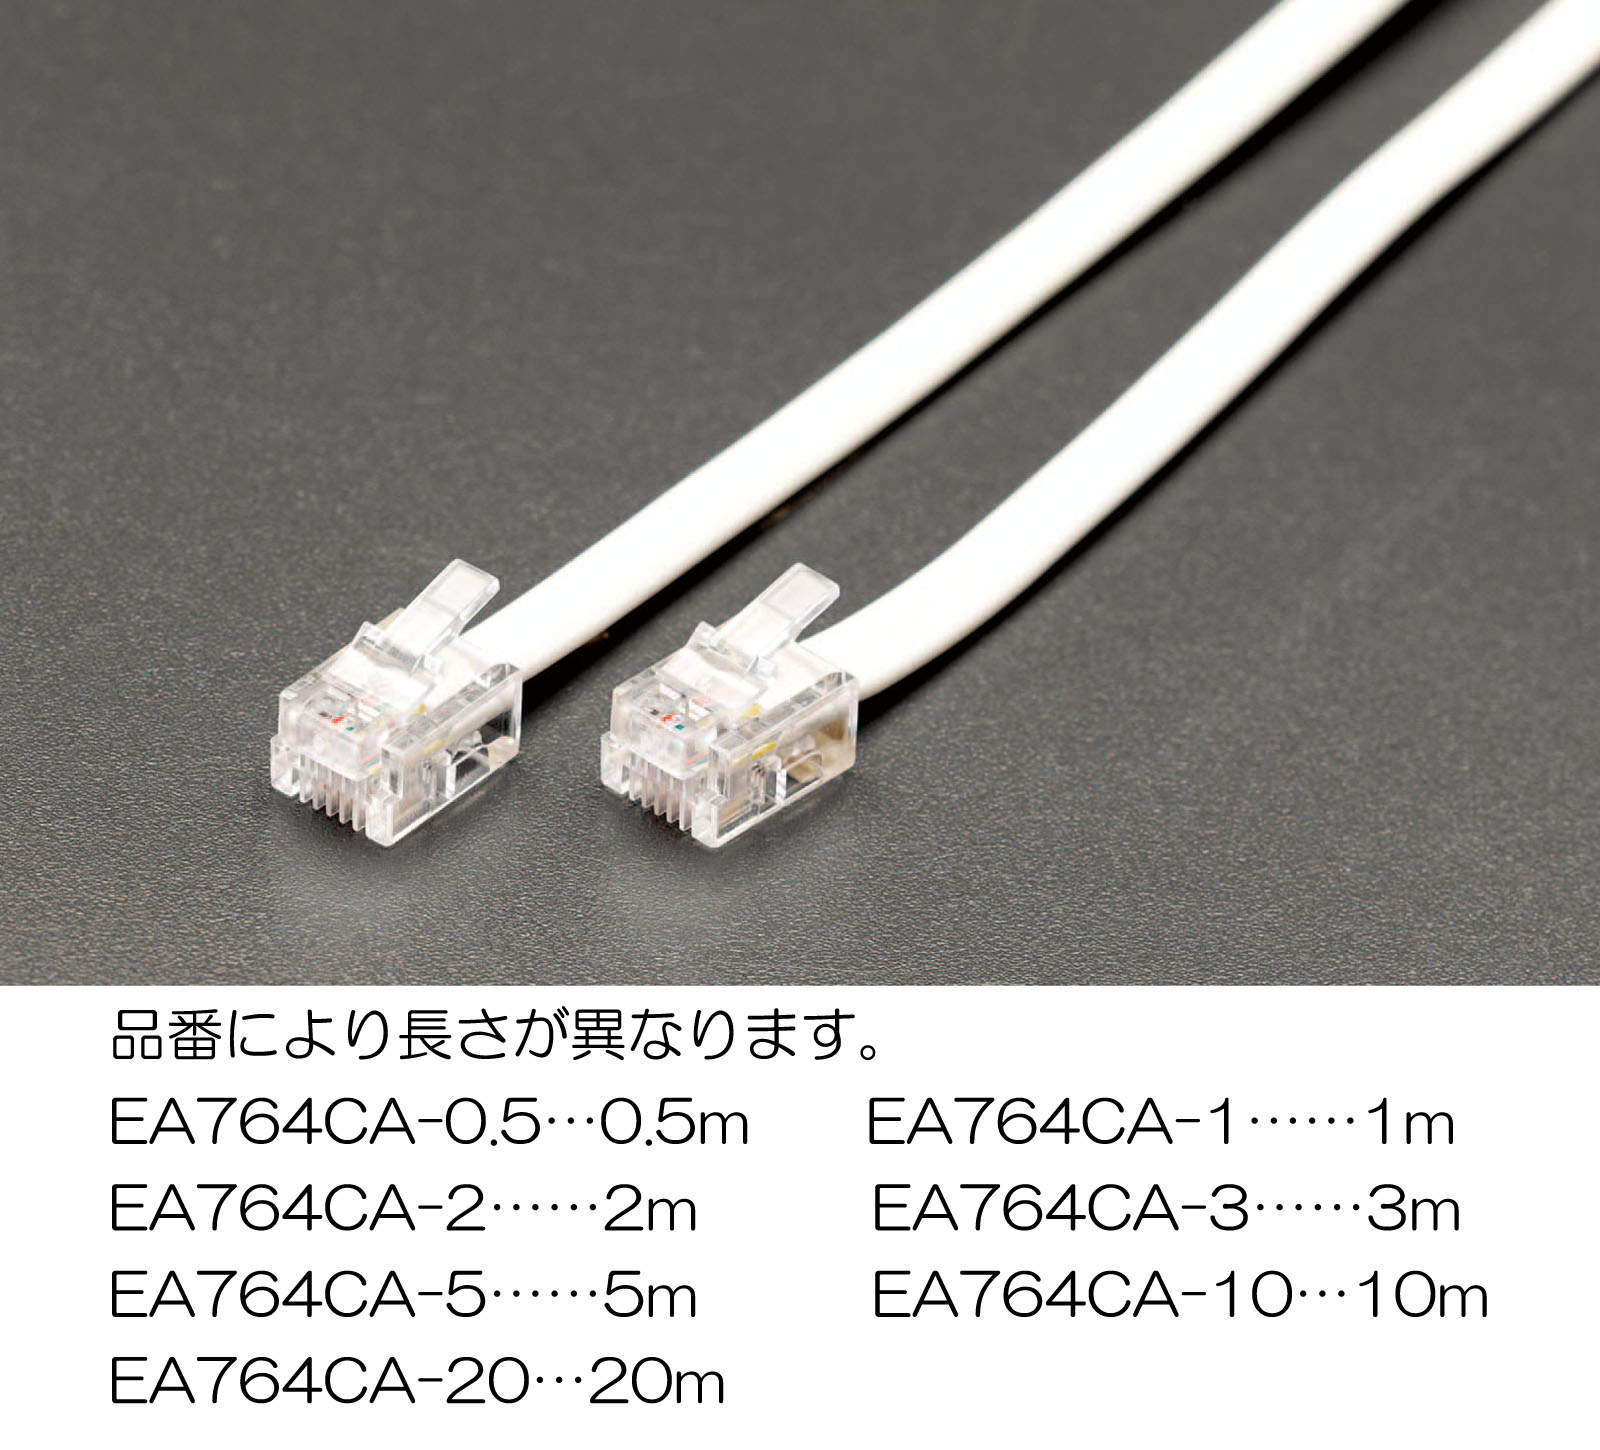 EA764CA-10｜10 m モジュラーコード(6極4芯)のページ -